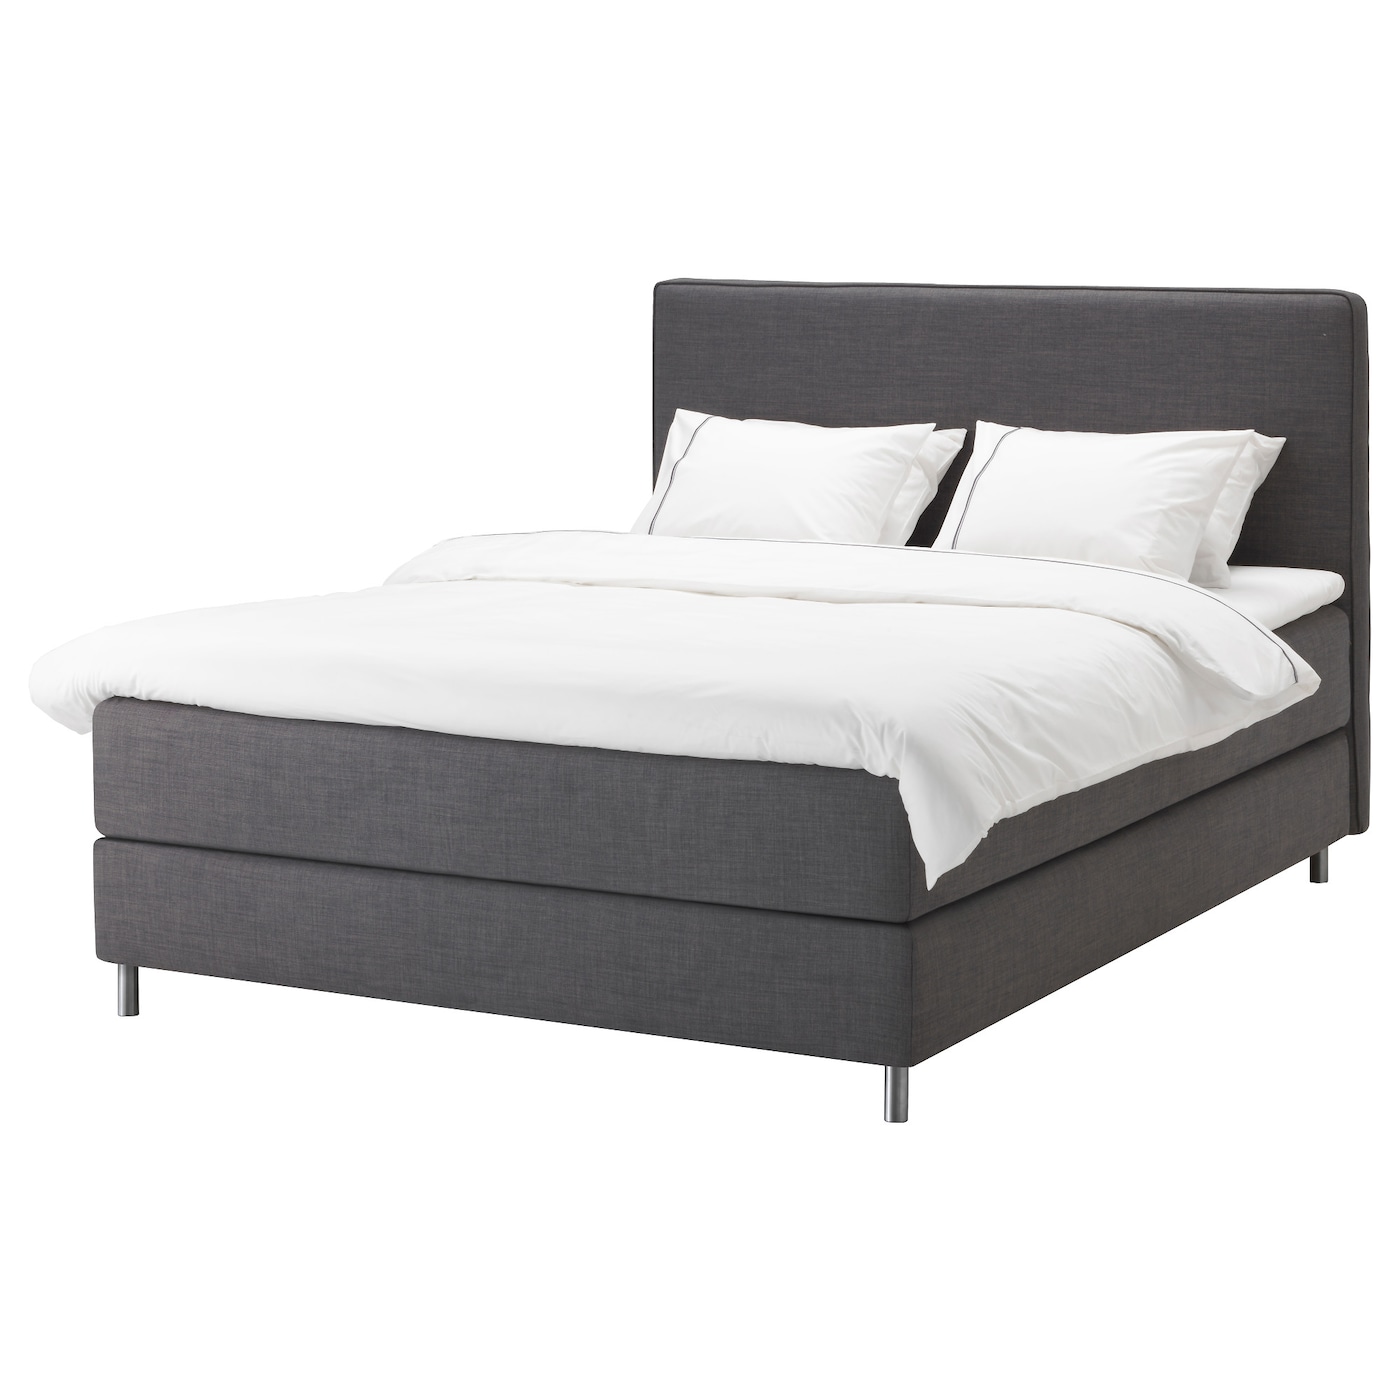 Континентальная кровать - IKEA DUNVIK, 200х140 см, черный, ДУНВИК ИКЕА